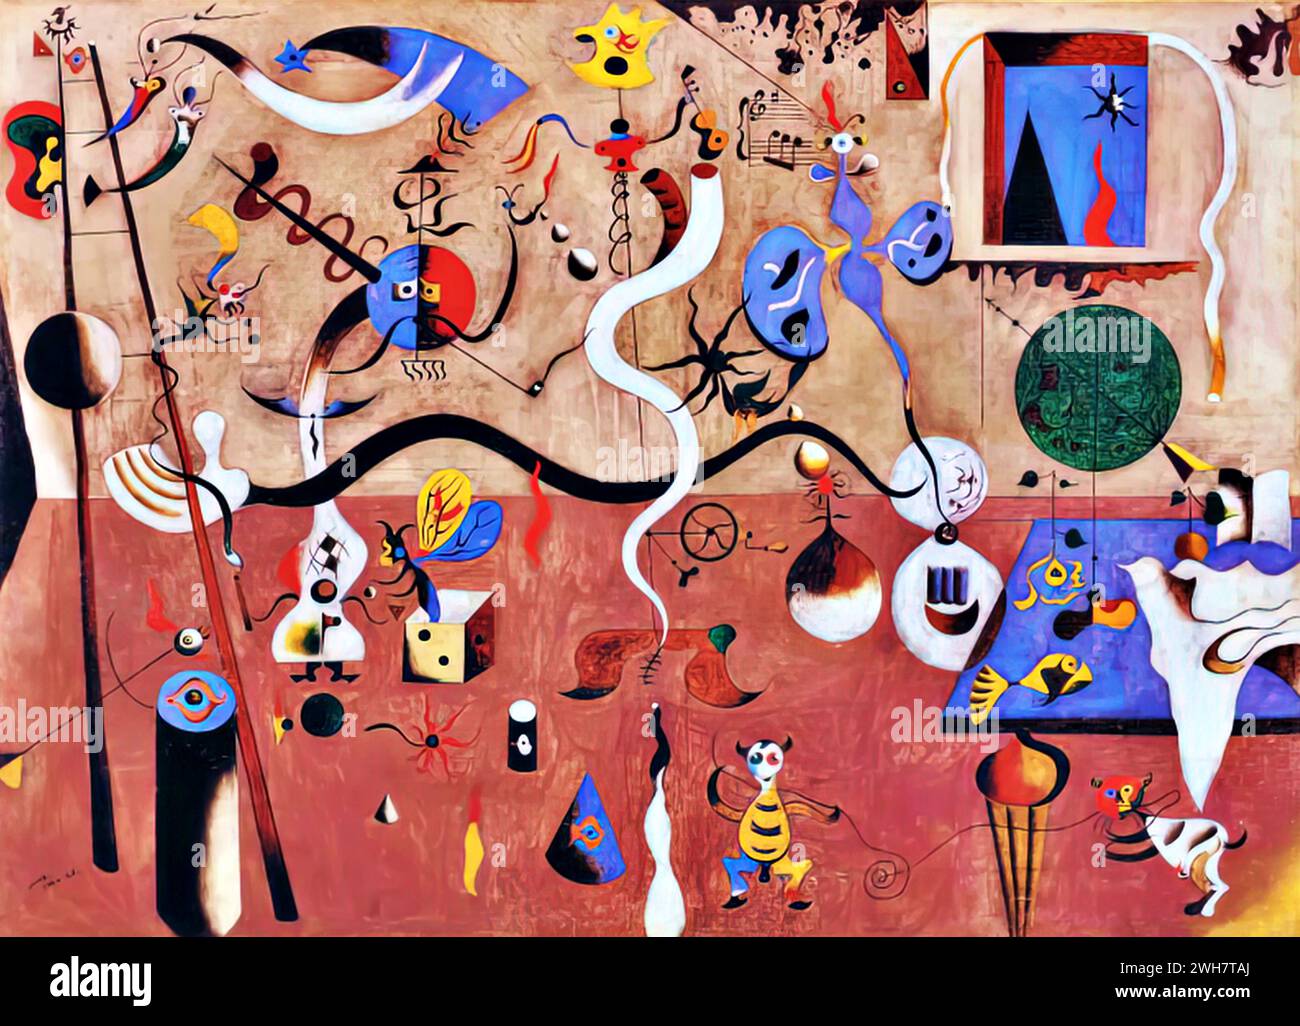 Carnaval d'Arlequin, 1924-25 (huile sur toile) de l'artiste Miro, Joan (1893-1983) Espagnol. Illustration de Vecteur